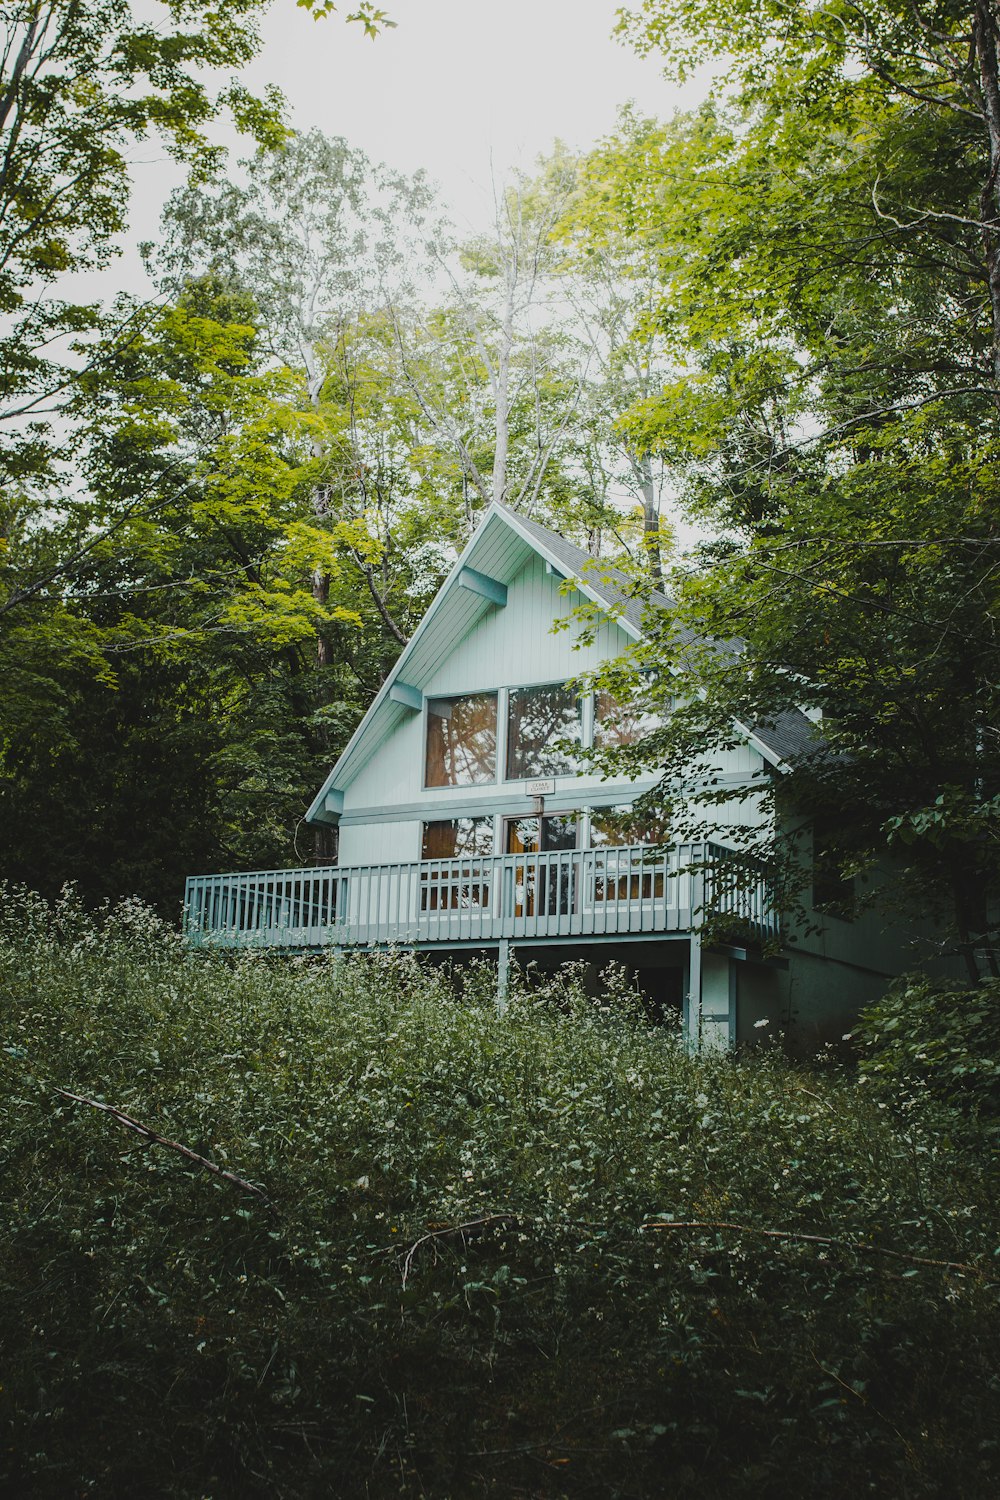 Maison en bois blanc entourée d’arbres verts pendant la journée